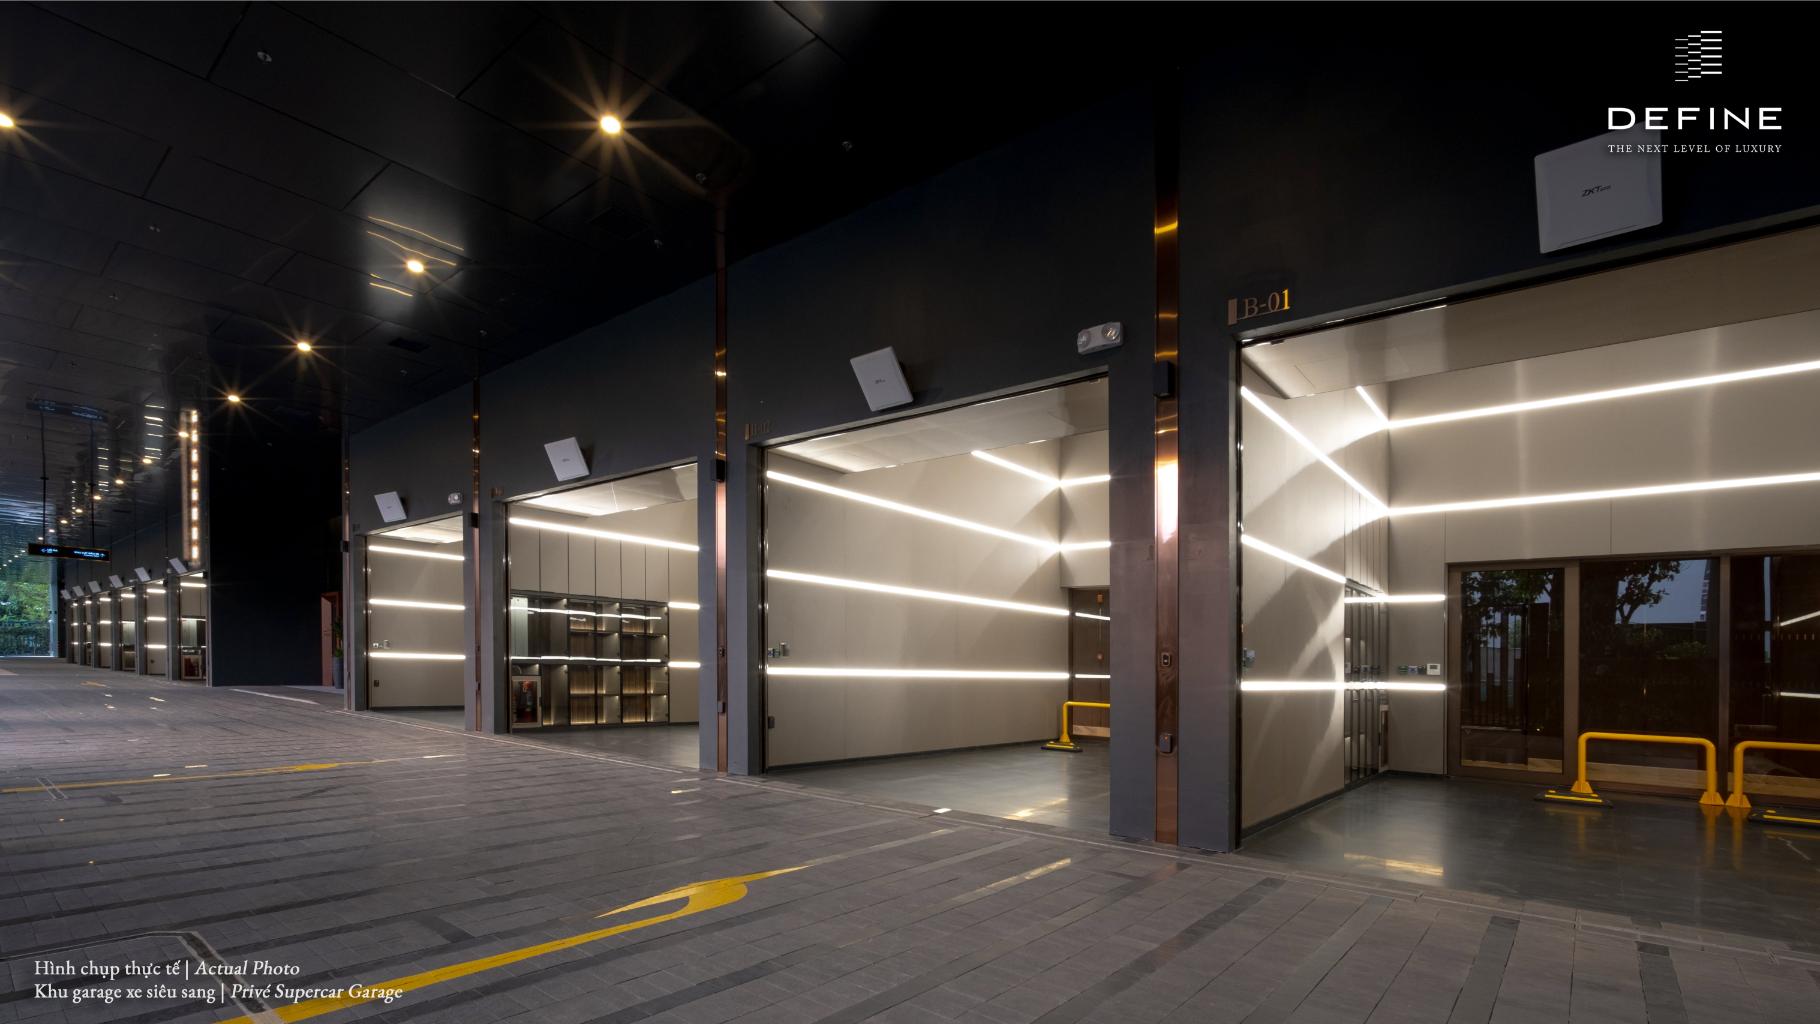 03. DEFINE Private Supercar Garage CapitaLand Development trao chìa khóa căn hộ hạng sang DEFINE tại thành phố Thủ Đức